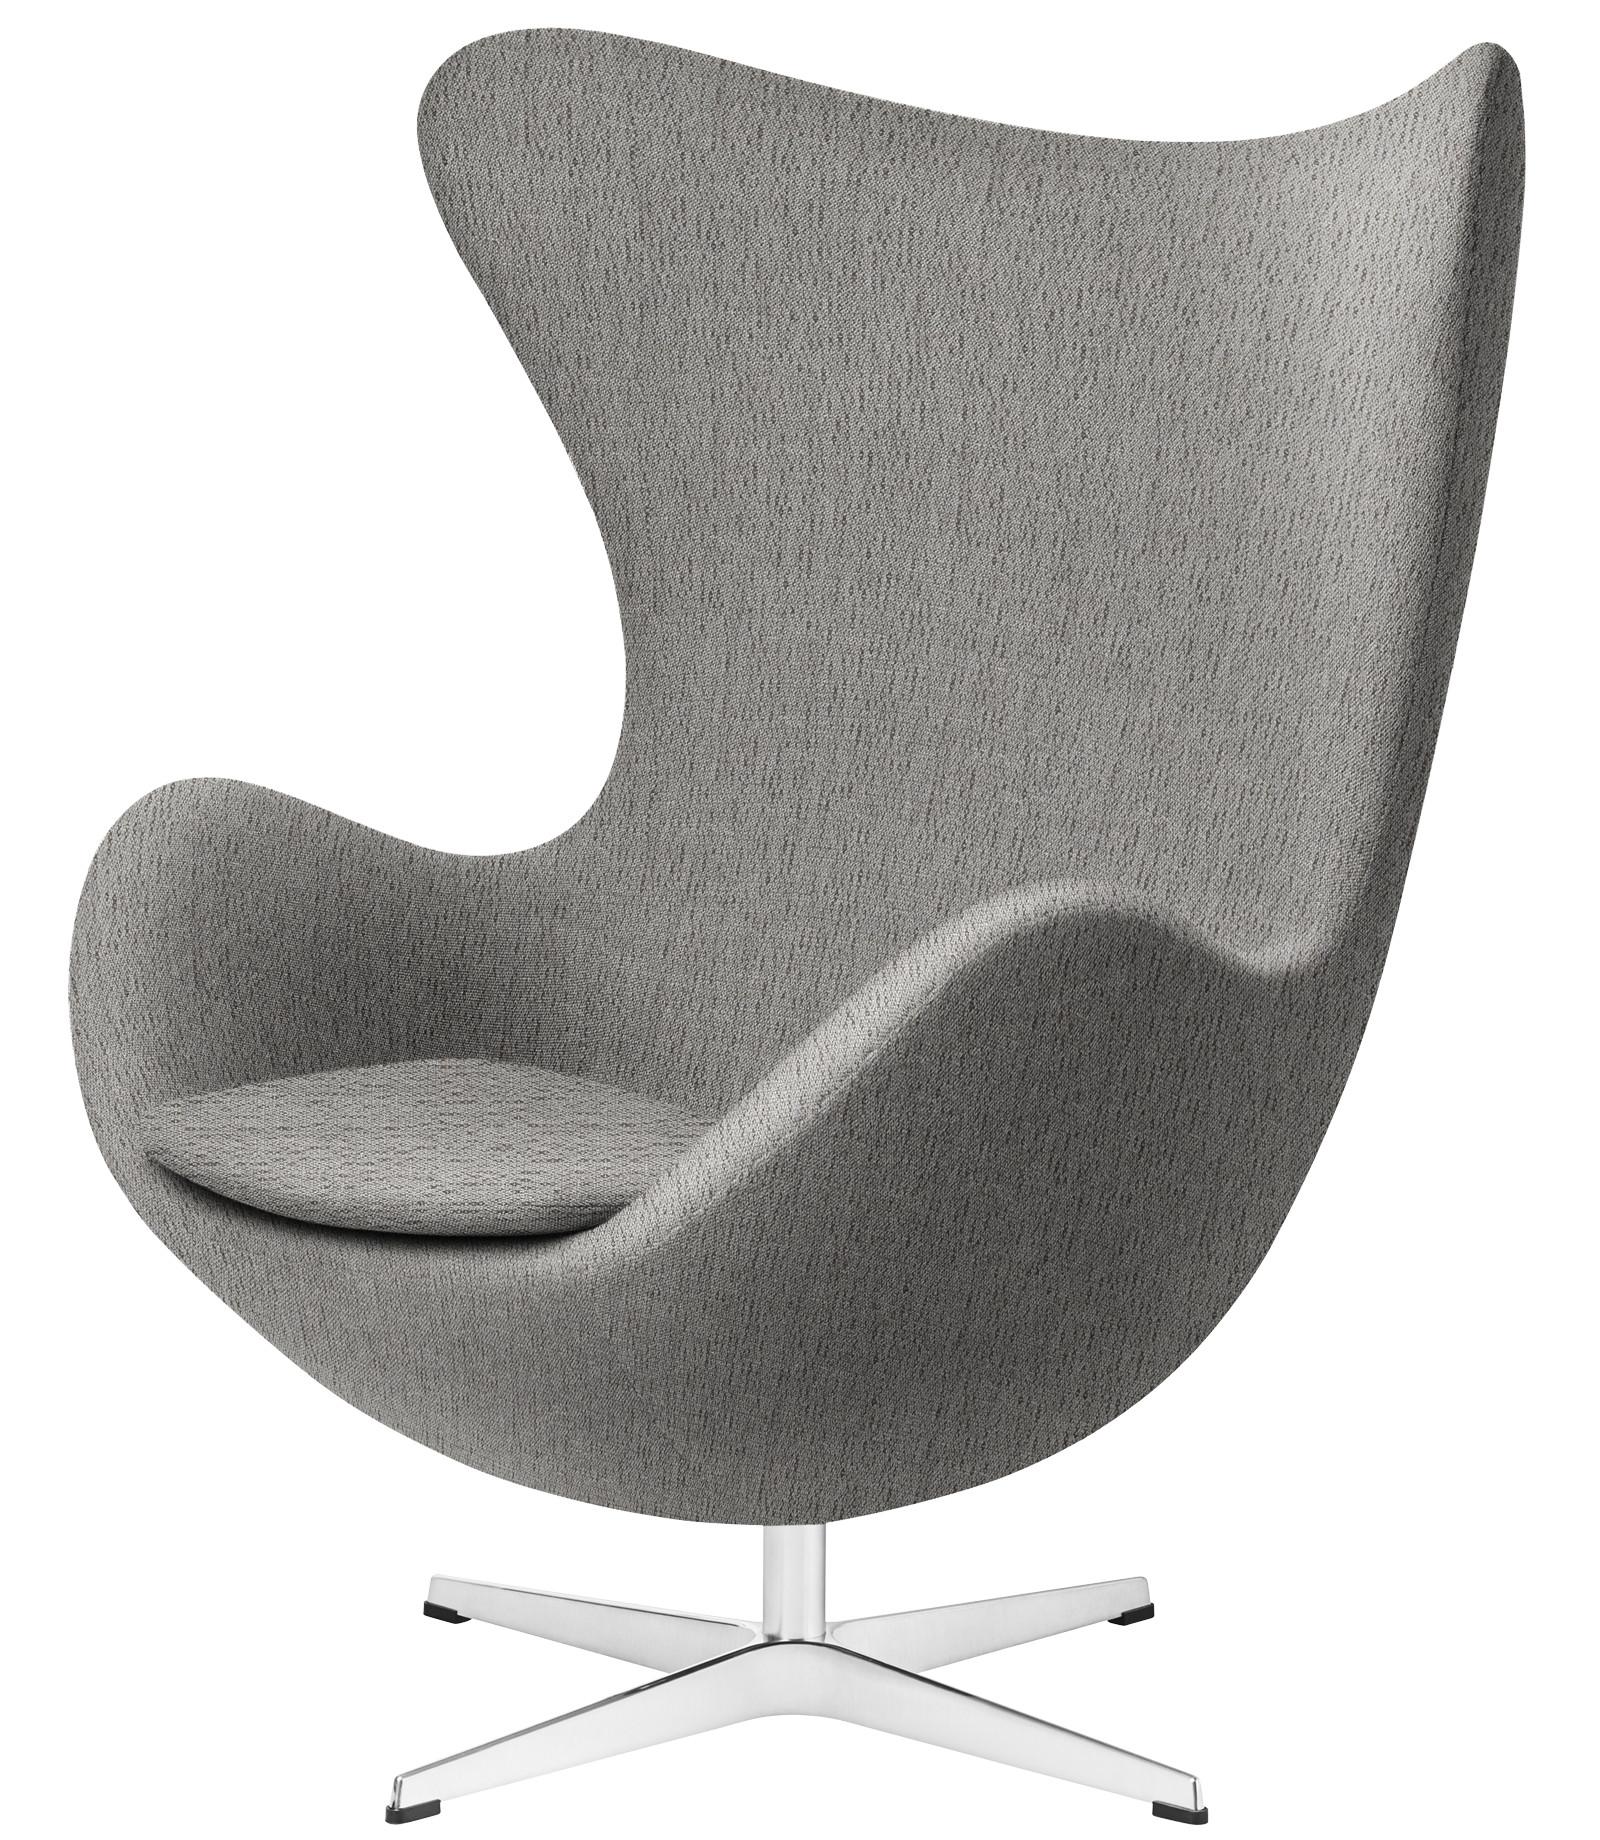 Arne Jacobsen 'Egg' Chair for Fritz Hansen in Christianshavn Fabric Upholstery For Sale 5